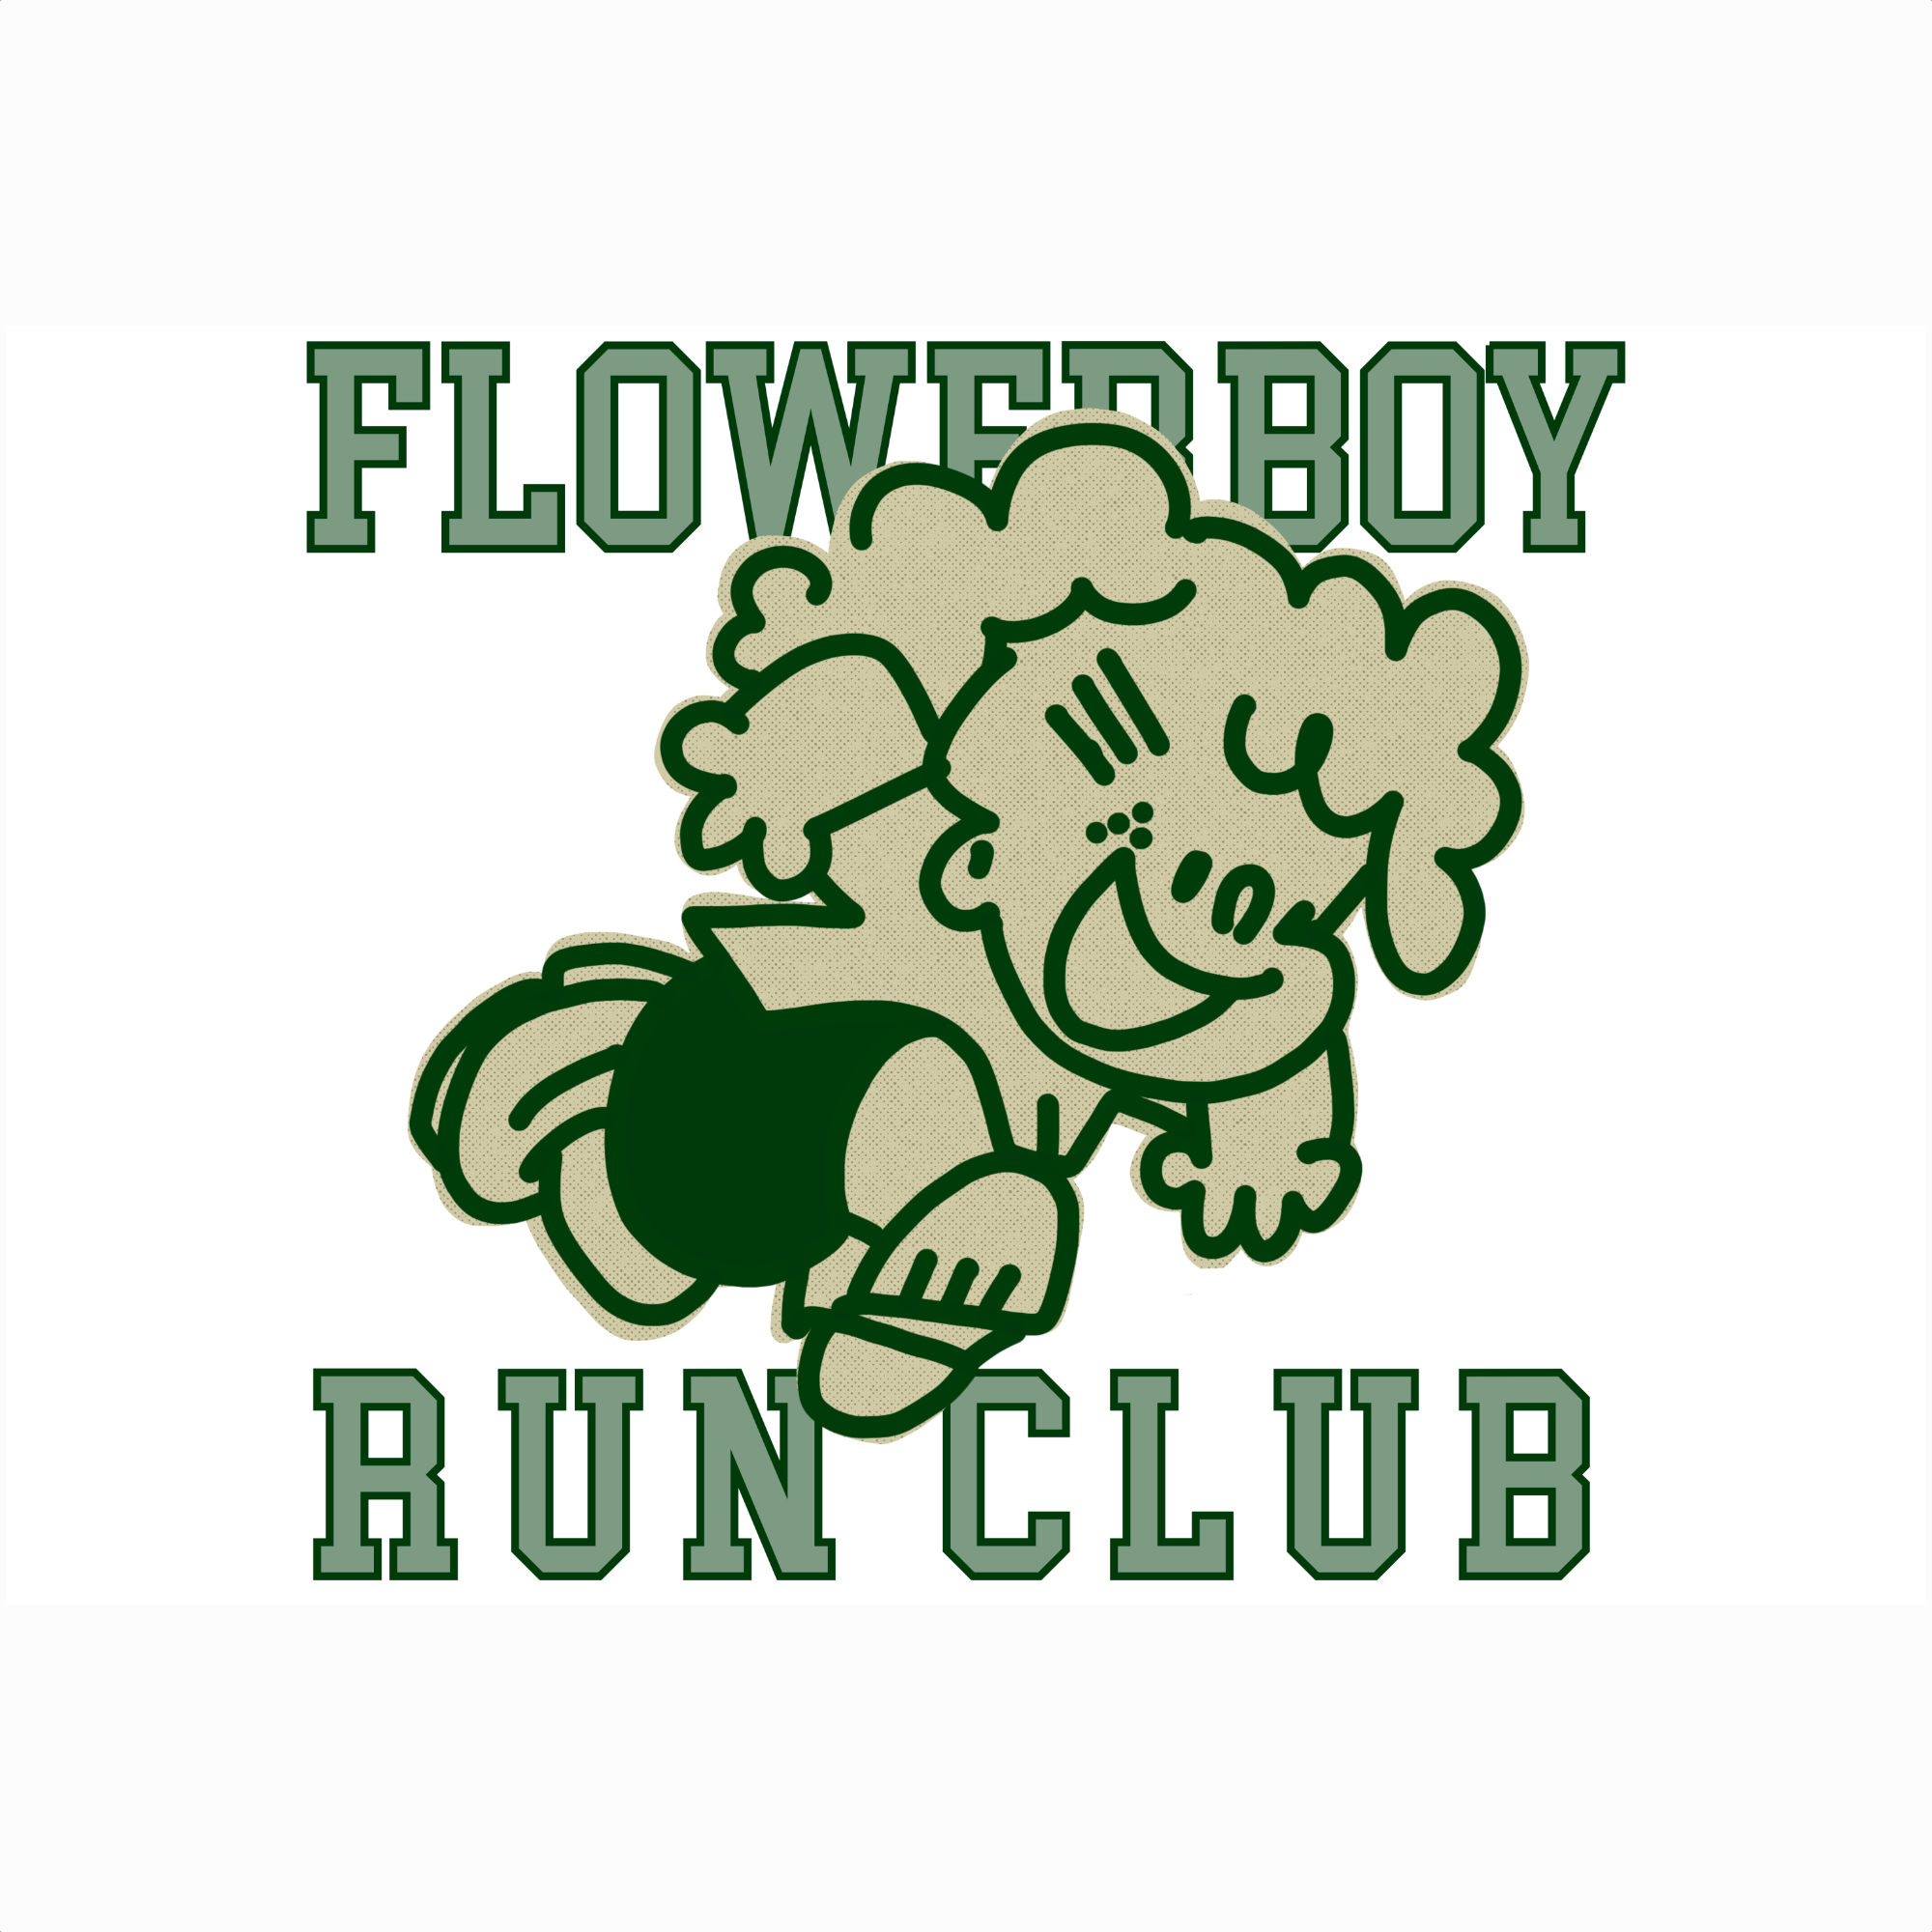 Flowerboy Run Club